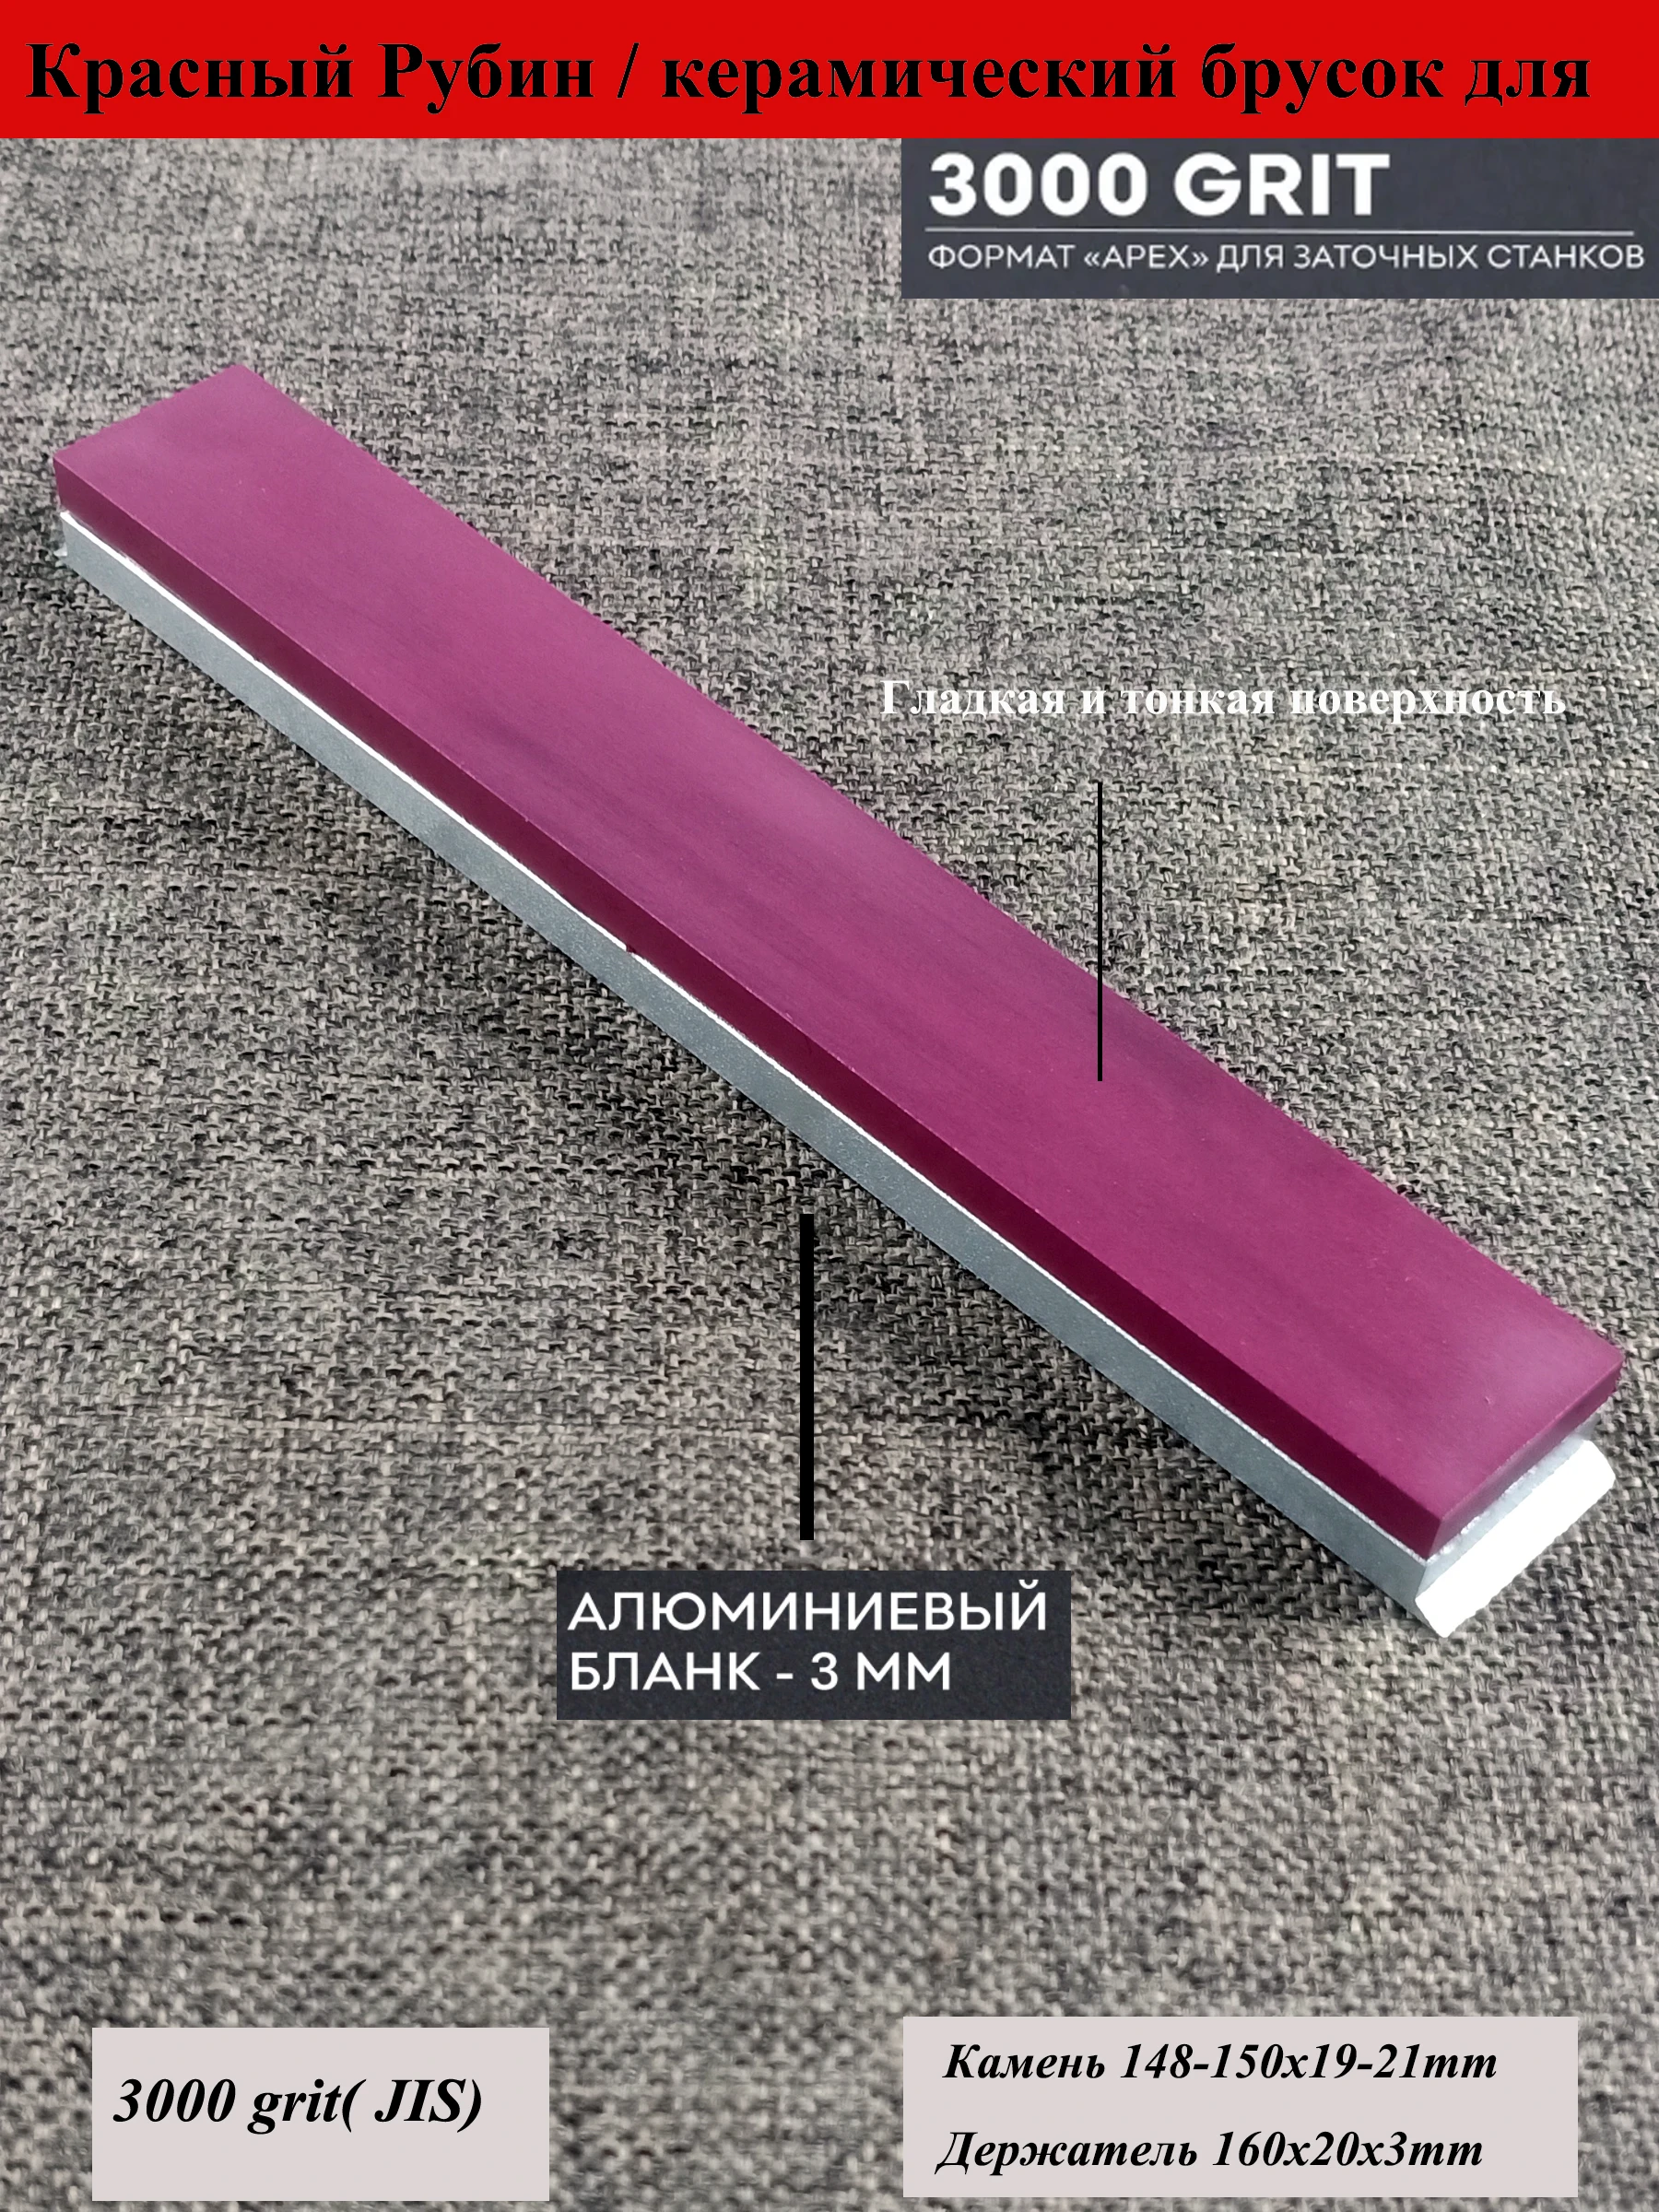 

Точильный камень для ножей Apex Ruixin pro rx008, 3000 грит, 20 мм